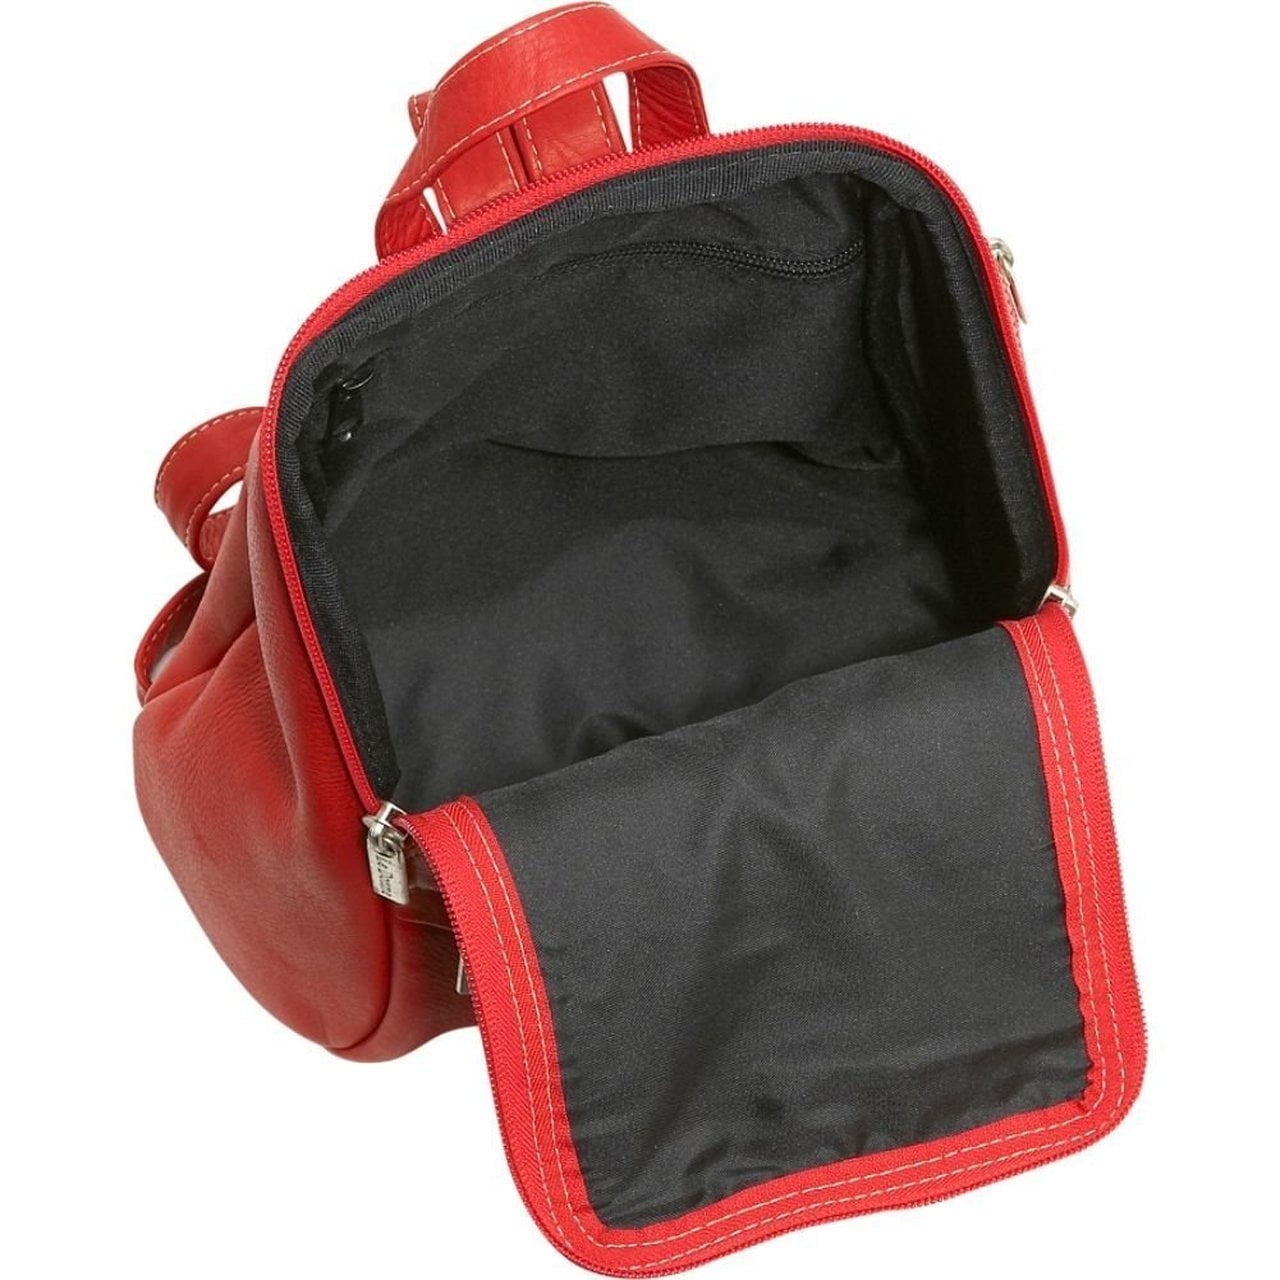 Le Donne Leather U-Zip Bag - Women's Designer Leather Sling/Backpack -  Versatile Bag With Adjustable & Convertible Strap